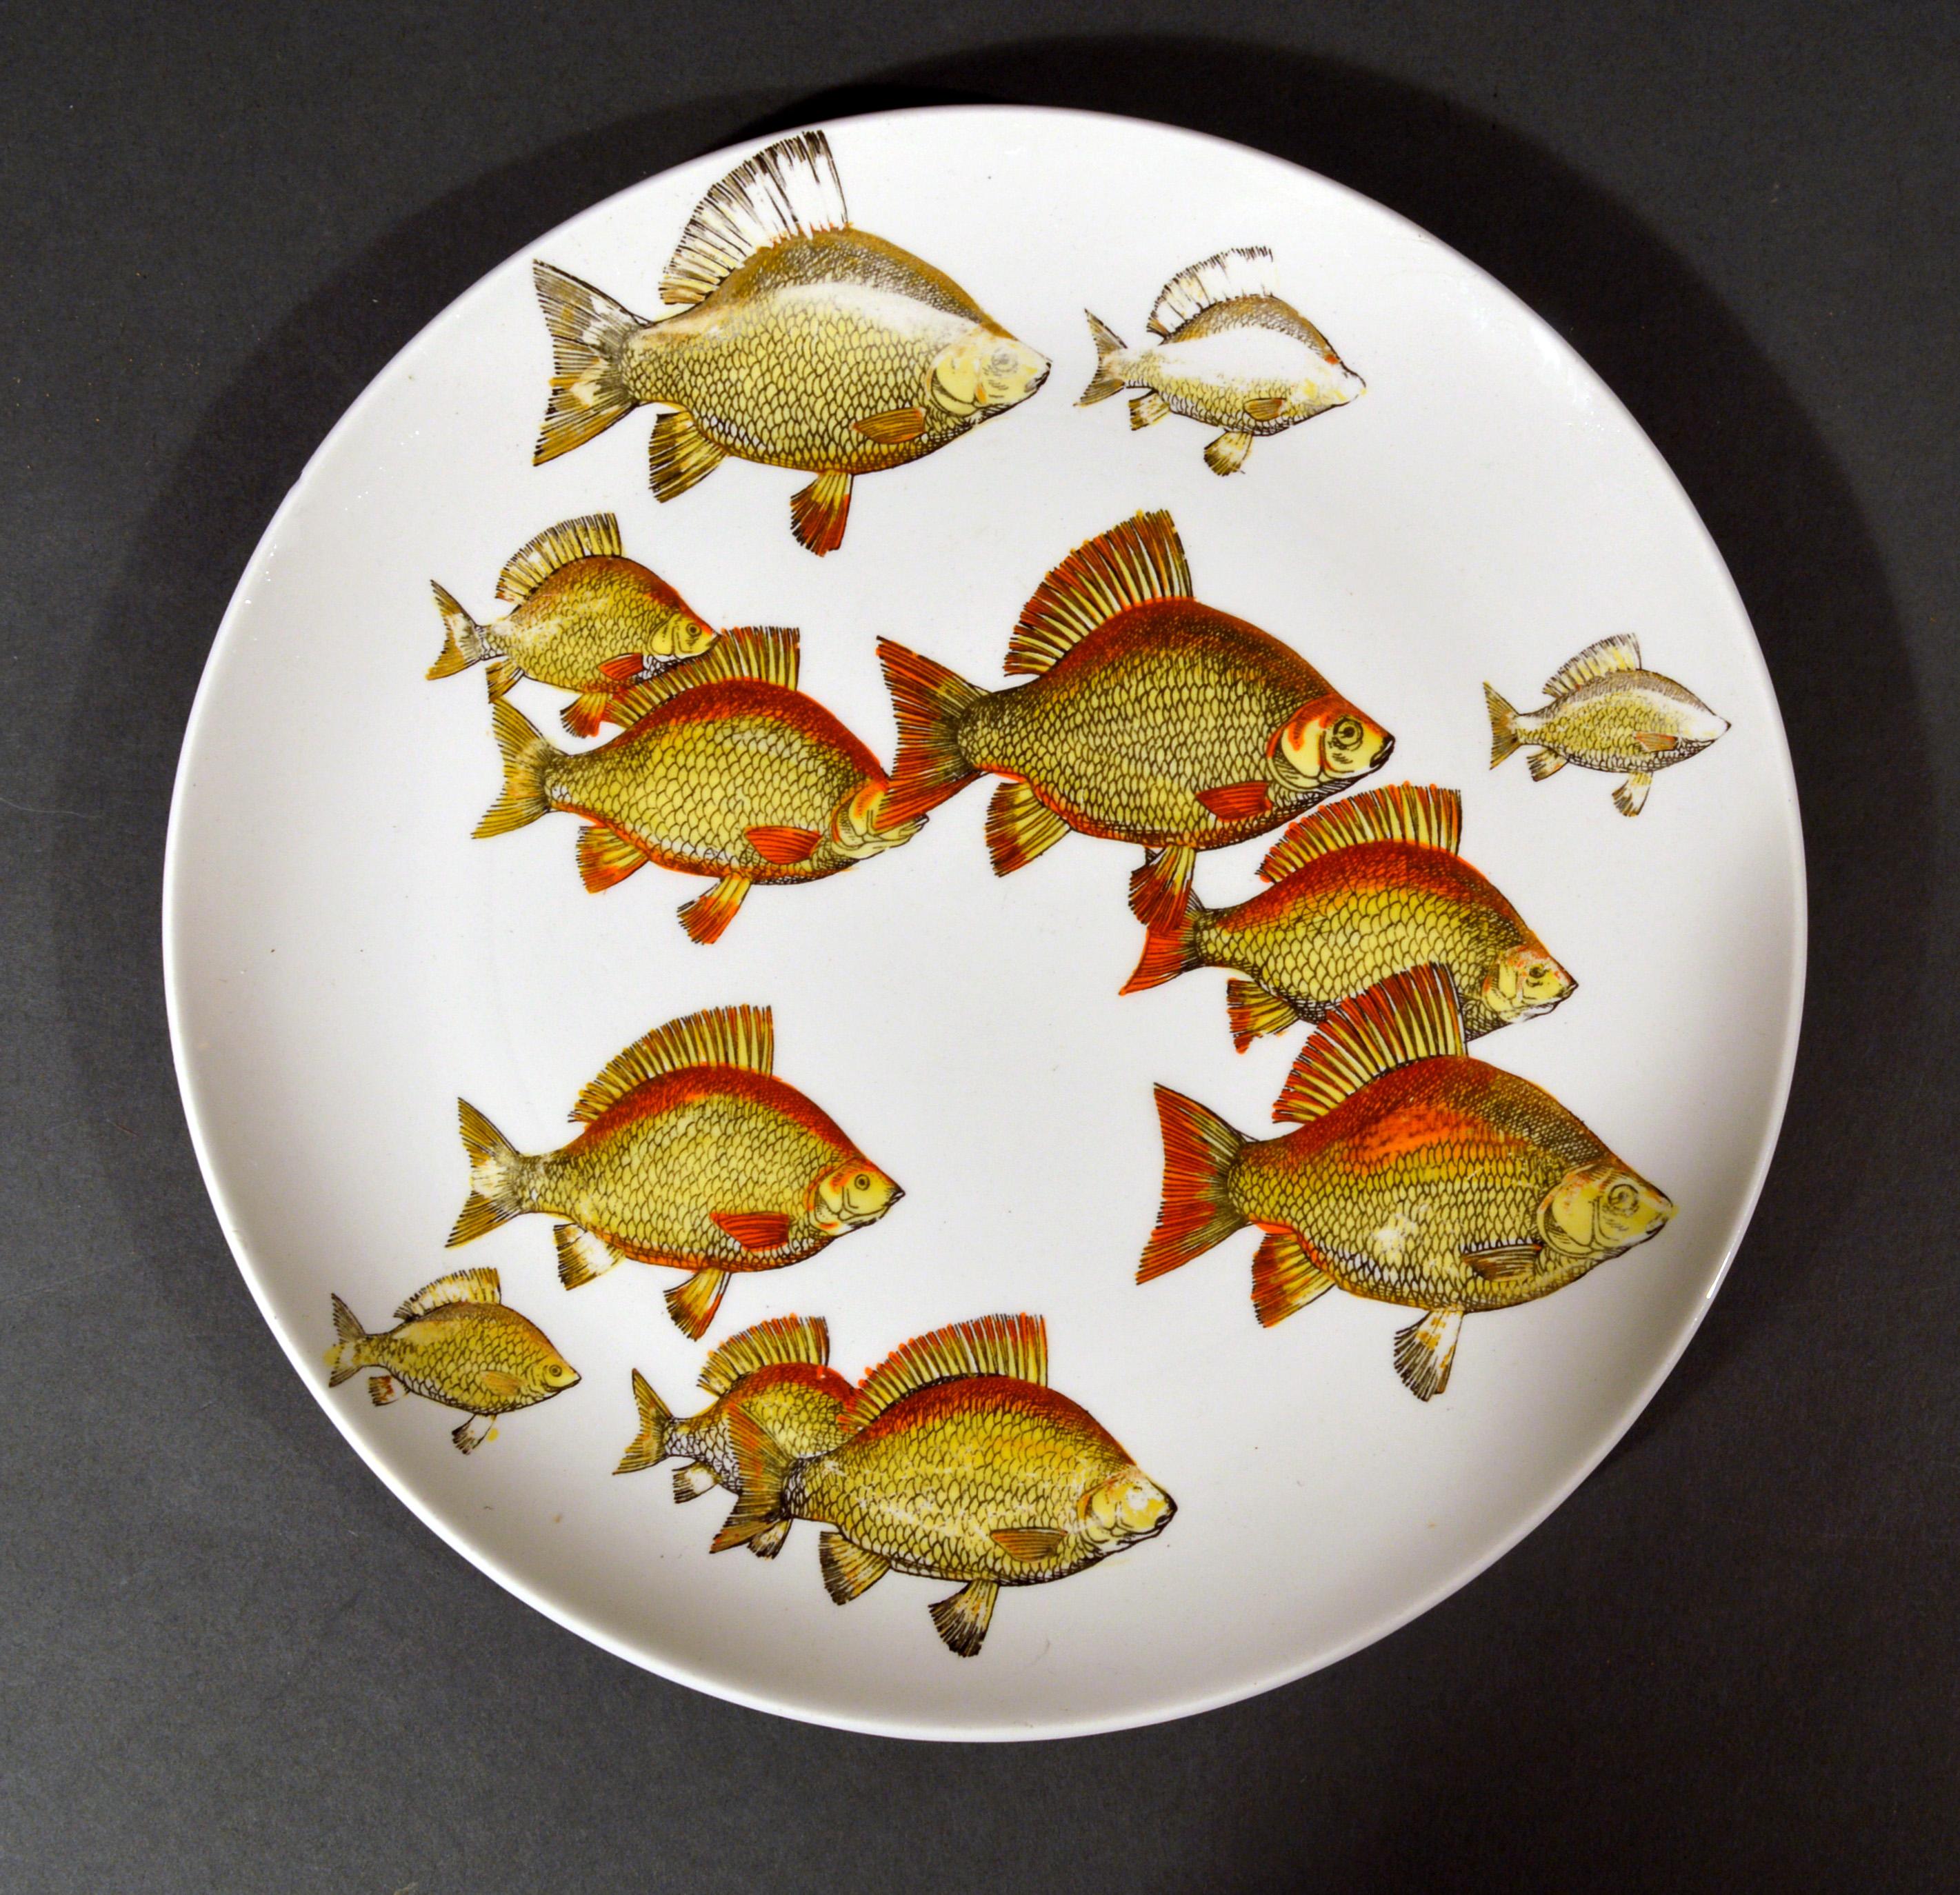 Paire de rares assiettes à poisson de Piero Fornasetti,
Motif Pesci ou Passage du poisson,
Numérotés 2 et 3,
vers les années 1960

Les assiettes en porcelaine représentent deux bancs de poissons différents nageant ensemble sur l'assiette. 

Chaque